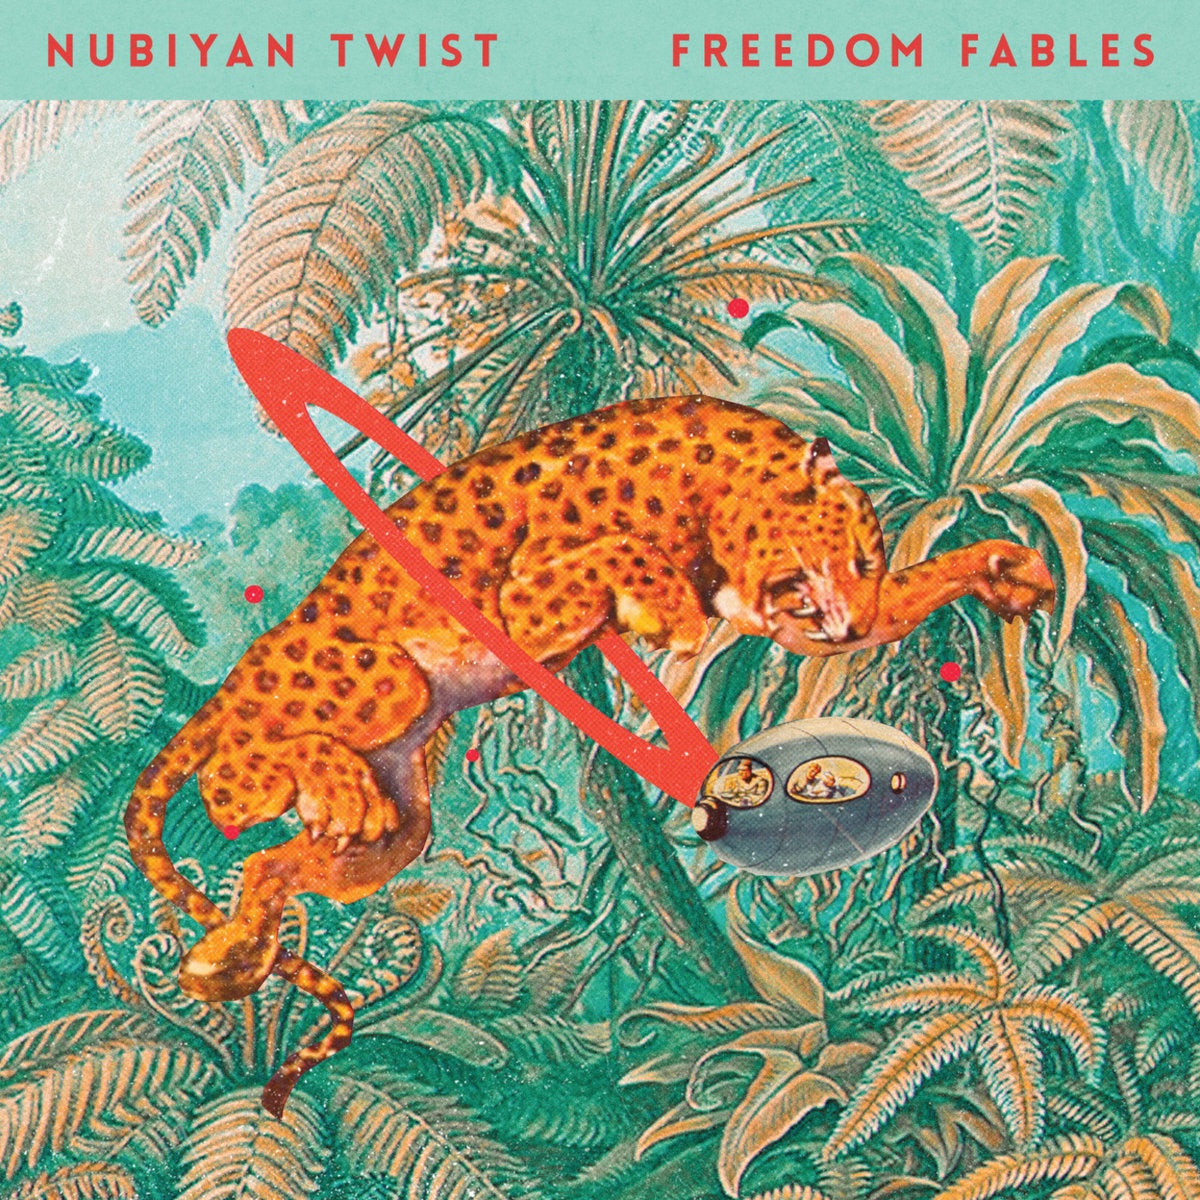 Nubiyan Twist – Freedom Fables